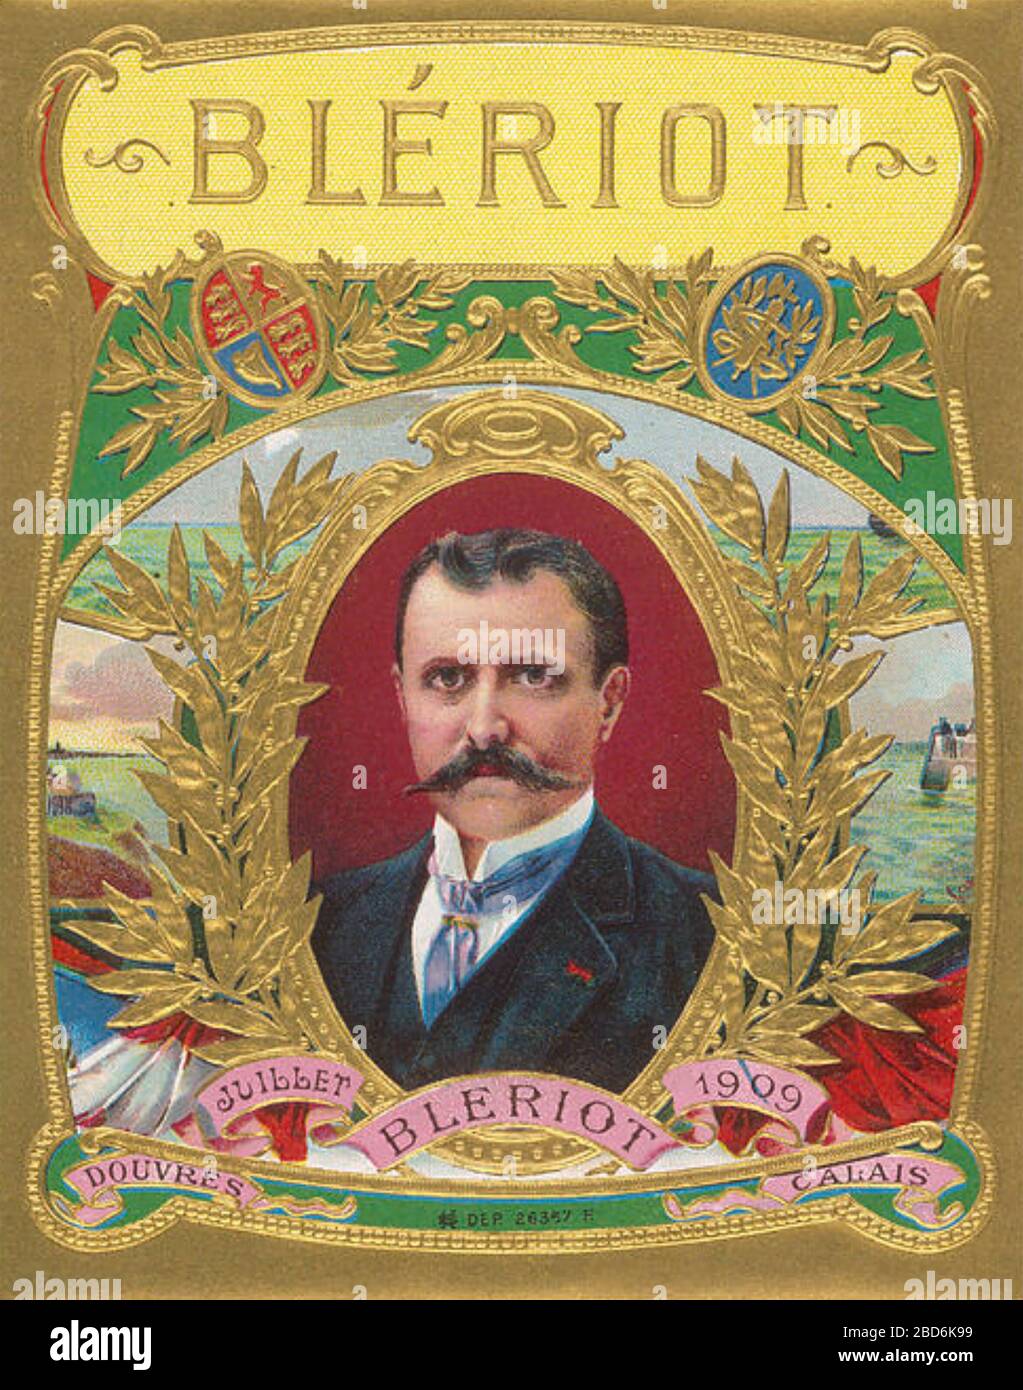 LOUIS BLERIOT (1872-1936) aviateur pionnier français et inventeur.Illustration célébrant son passage en 1909 de la Manche Banque D'Images